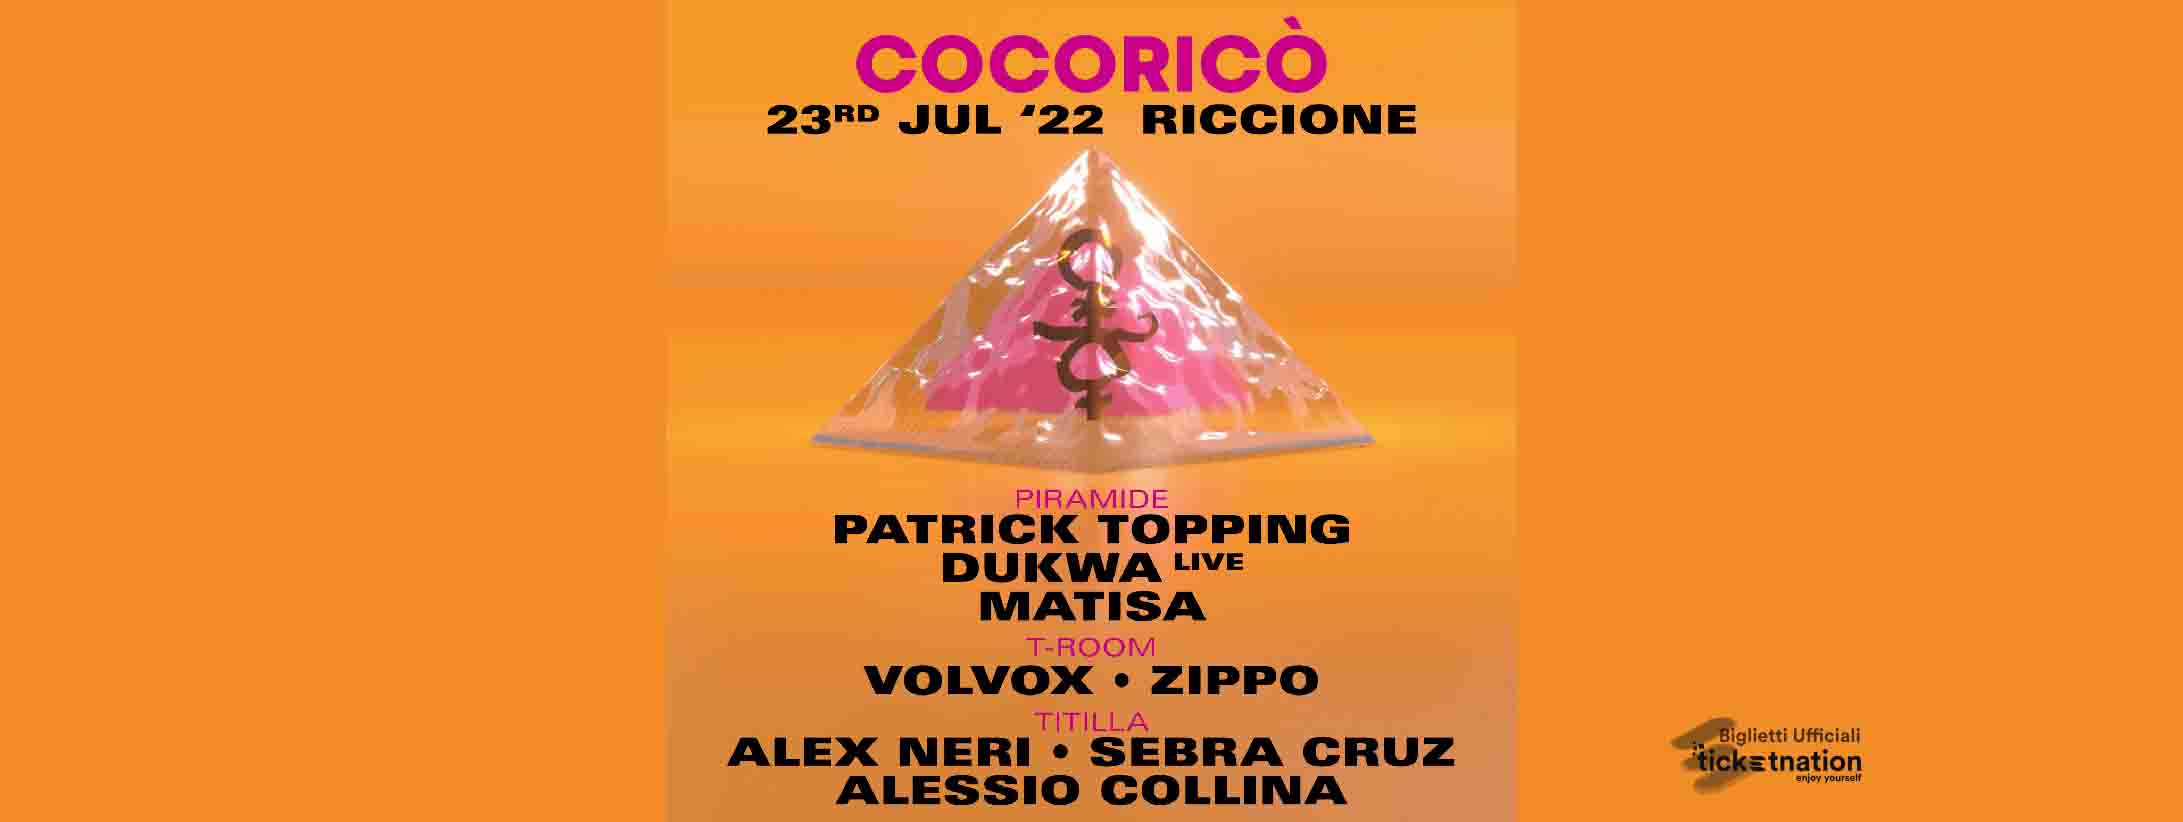 Patrick-topping-cocorico-23-luglio-22